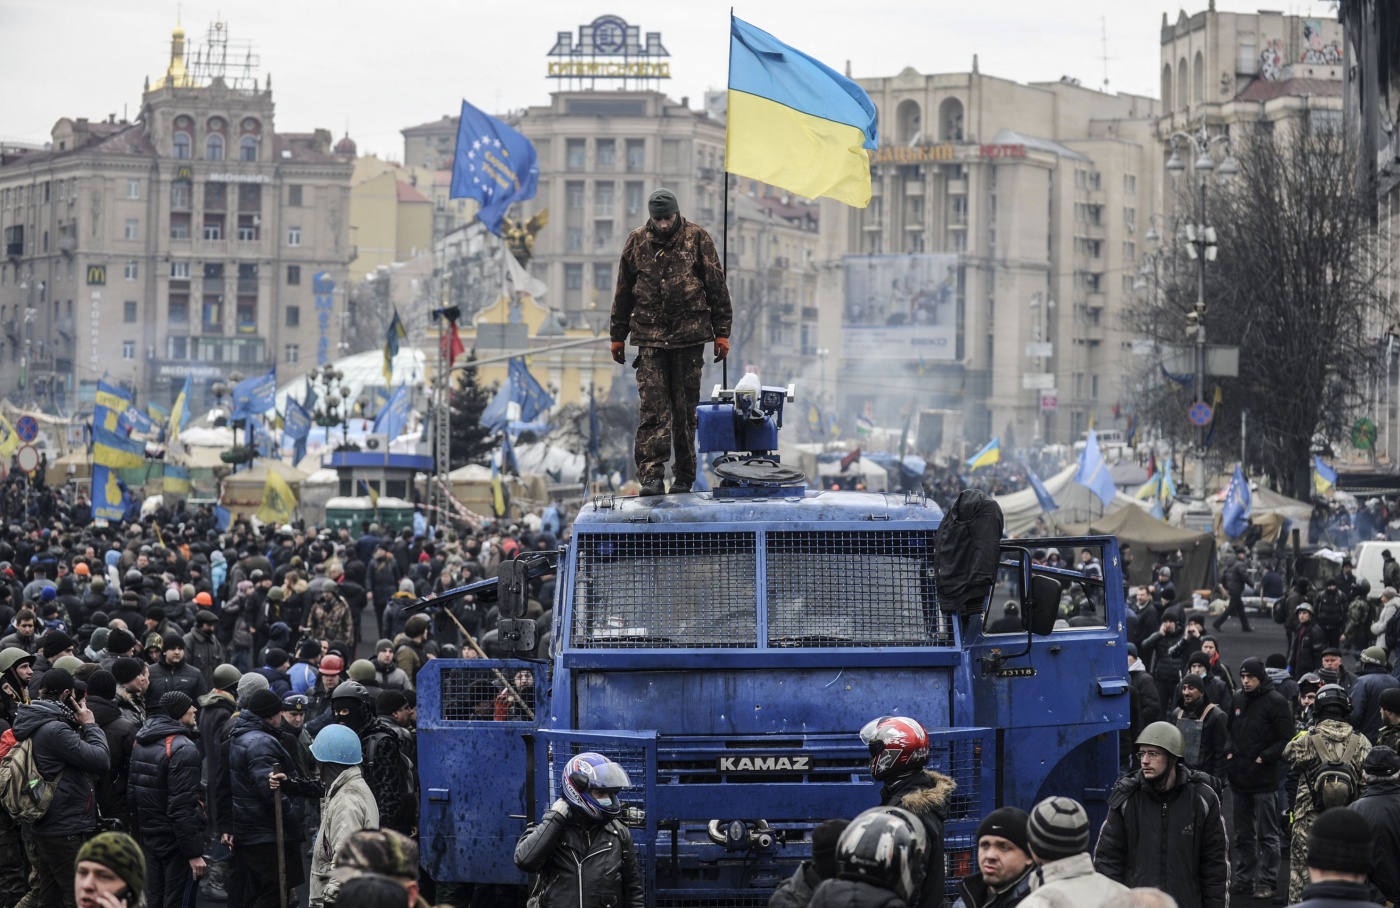 Майдана пока не будет, радикальных протестных настроений среди украинцев еще нет - социолог